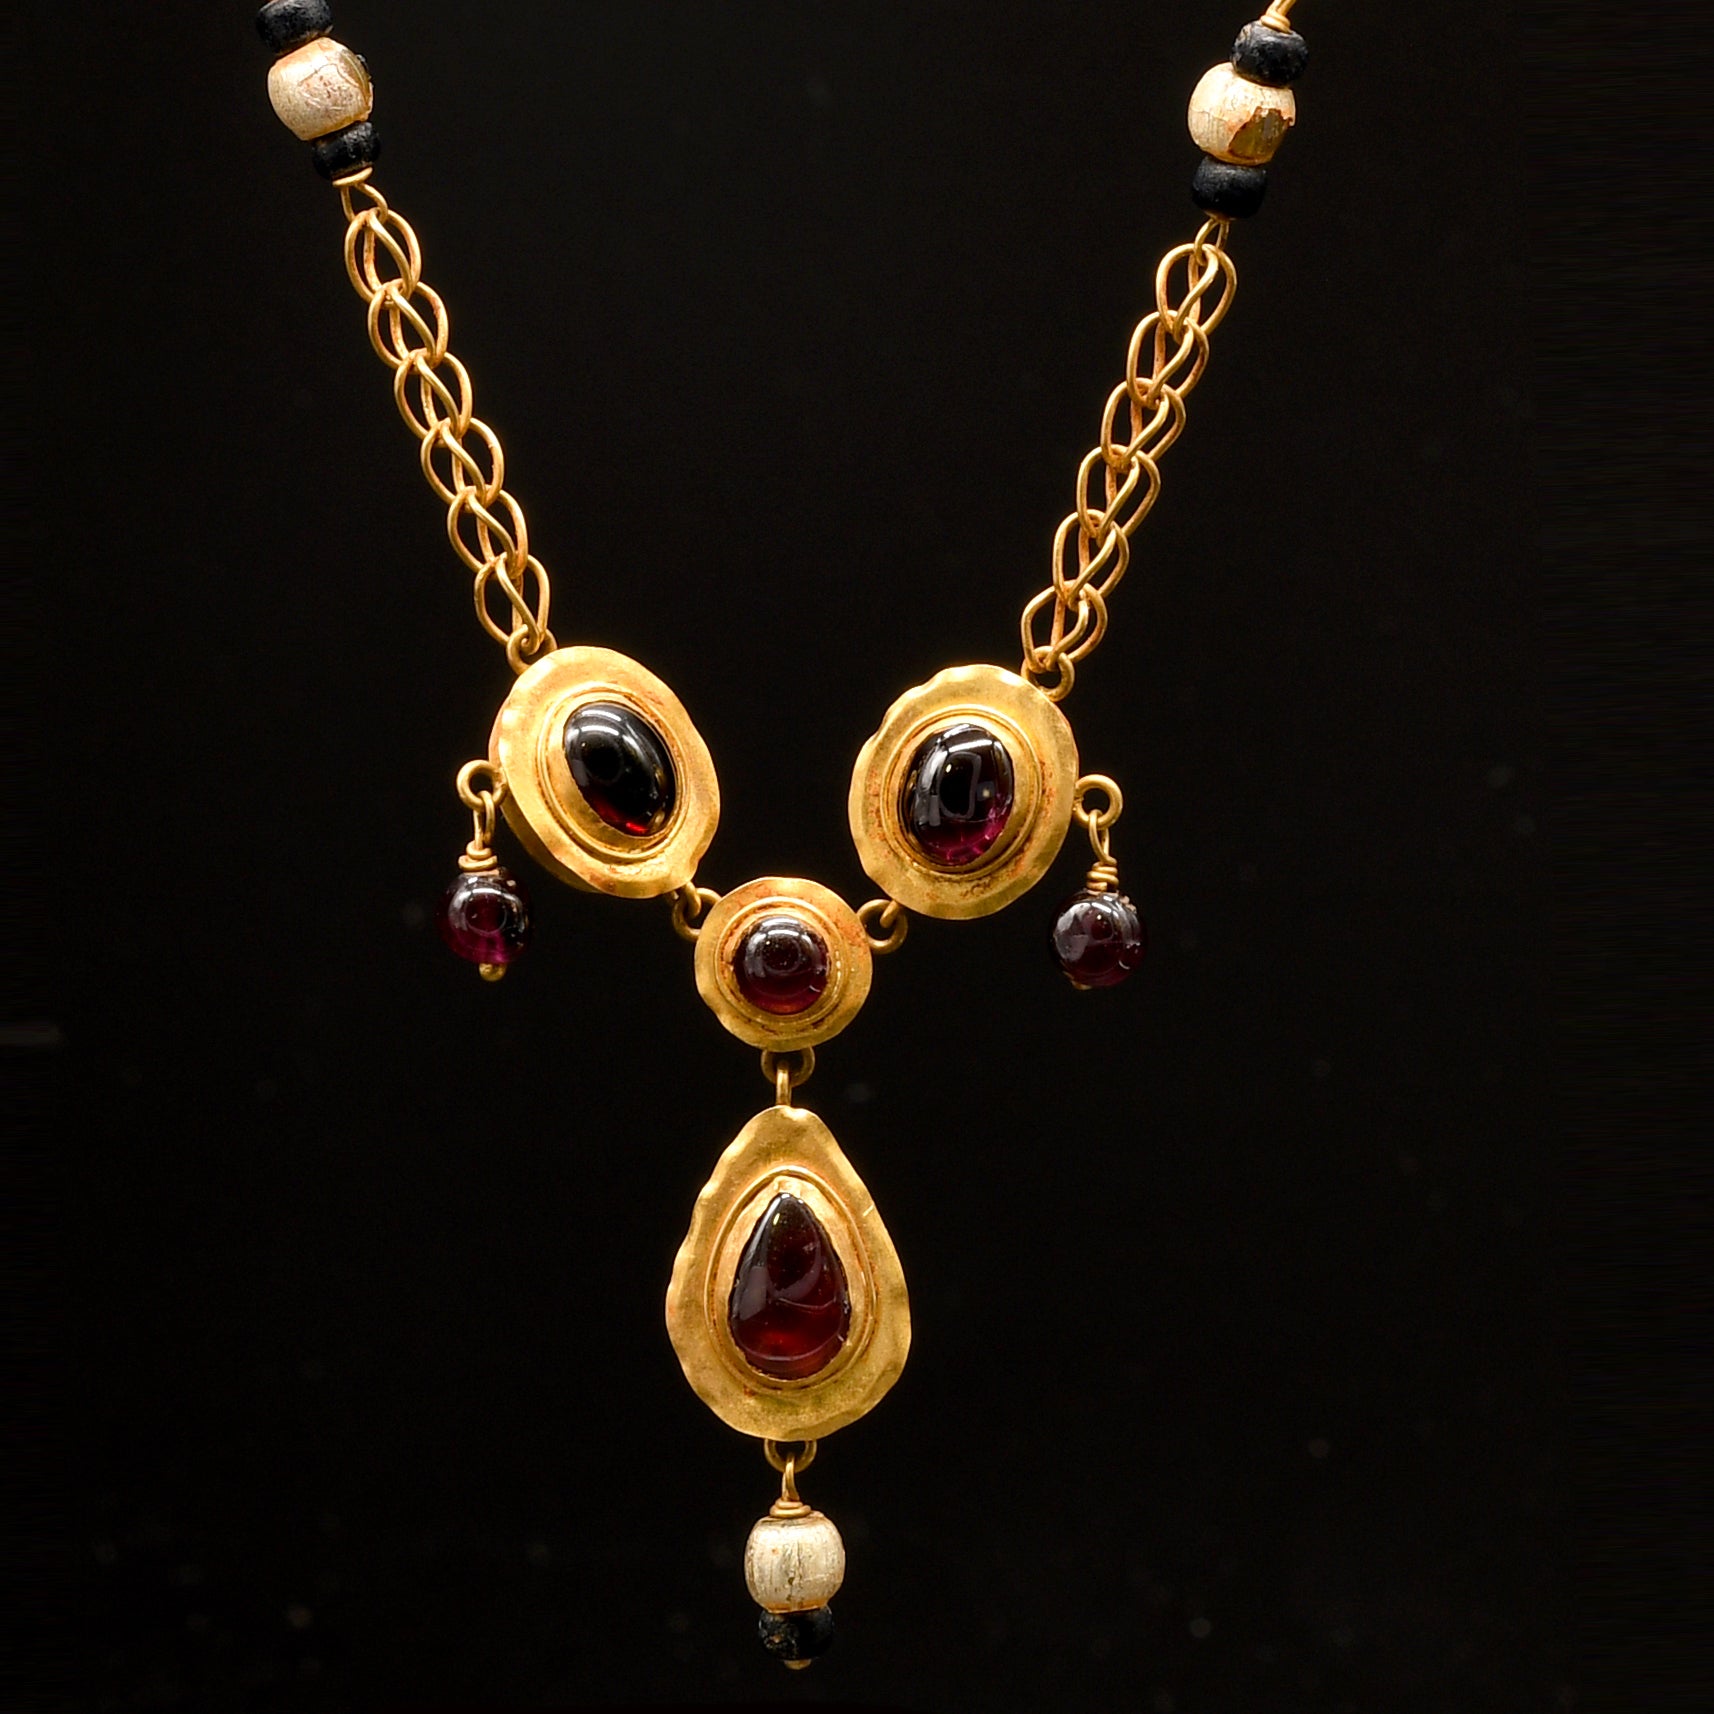 Eine hellenistische Halskette aus Gold, Granat und Perlen, ca. 1. Jahrhundert v. Chr